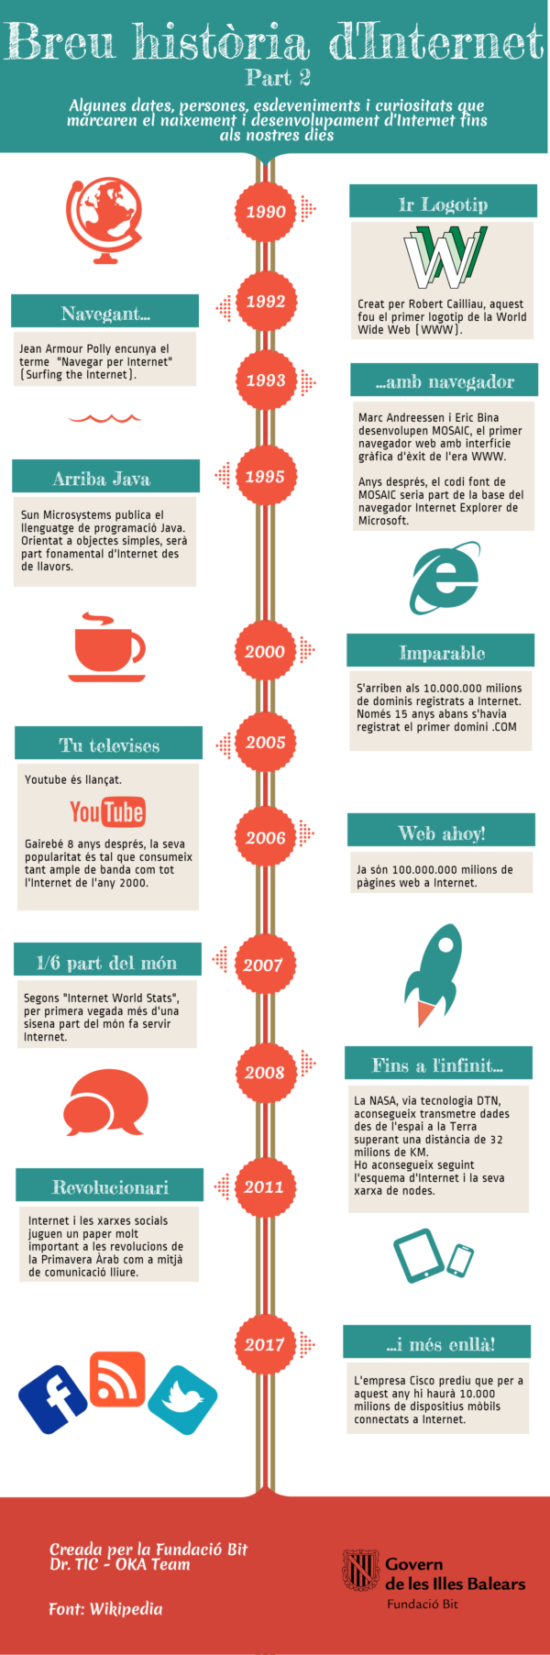 Infografia sobre Internet  (3)